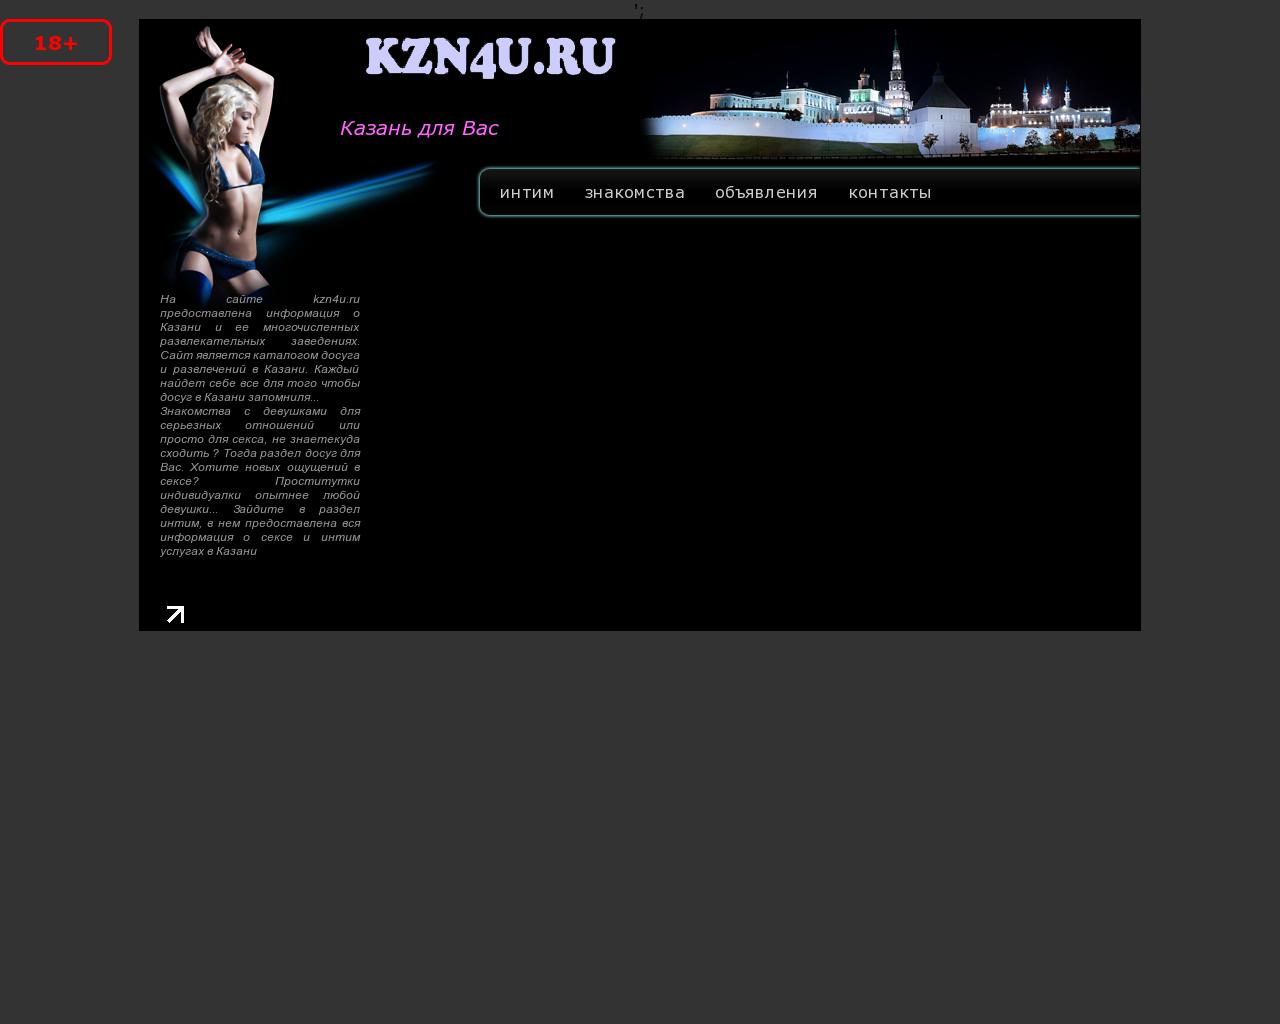 Изображение сайта kzn4u.ru в разрешении 1280x1024